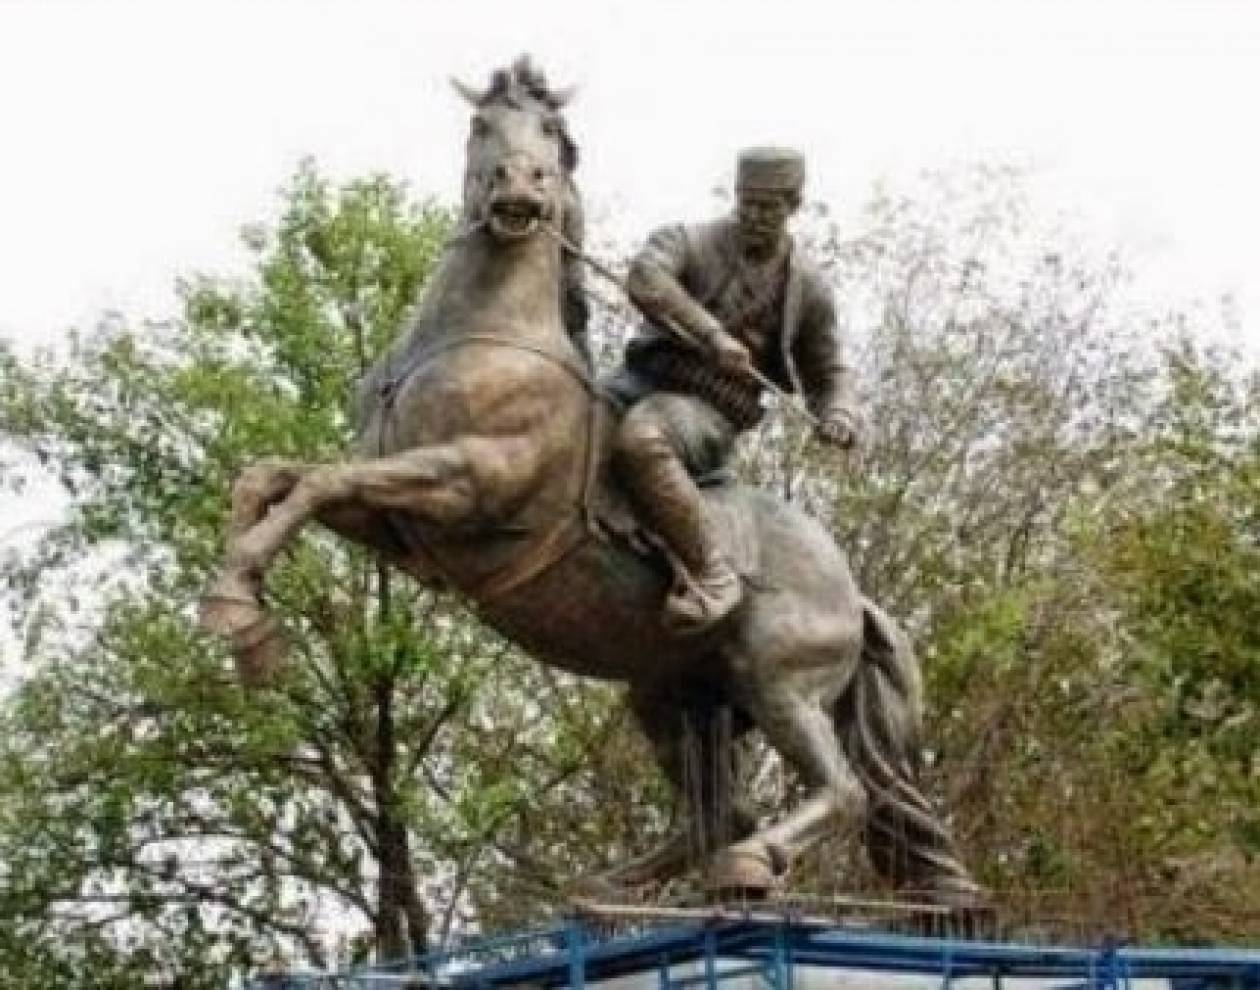 Σκόπια- Σοσιαλδημοκράτες: «Ποιος χρηματοδότησε τα νέα αγάλματα;»